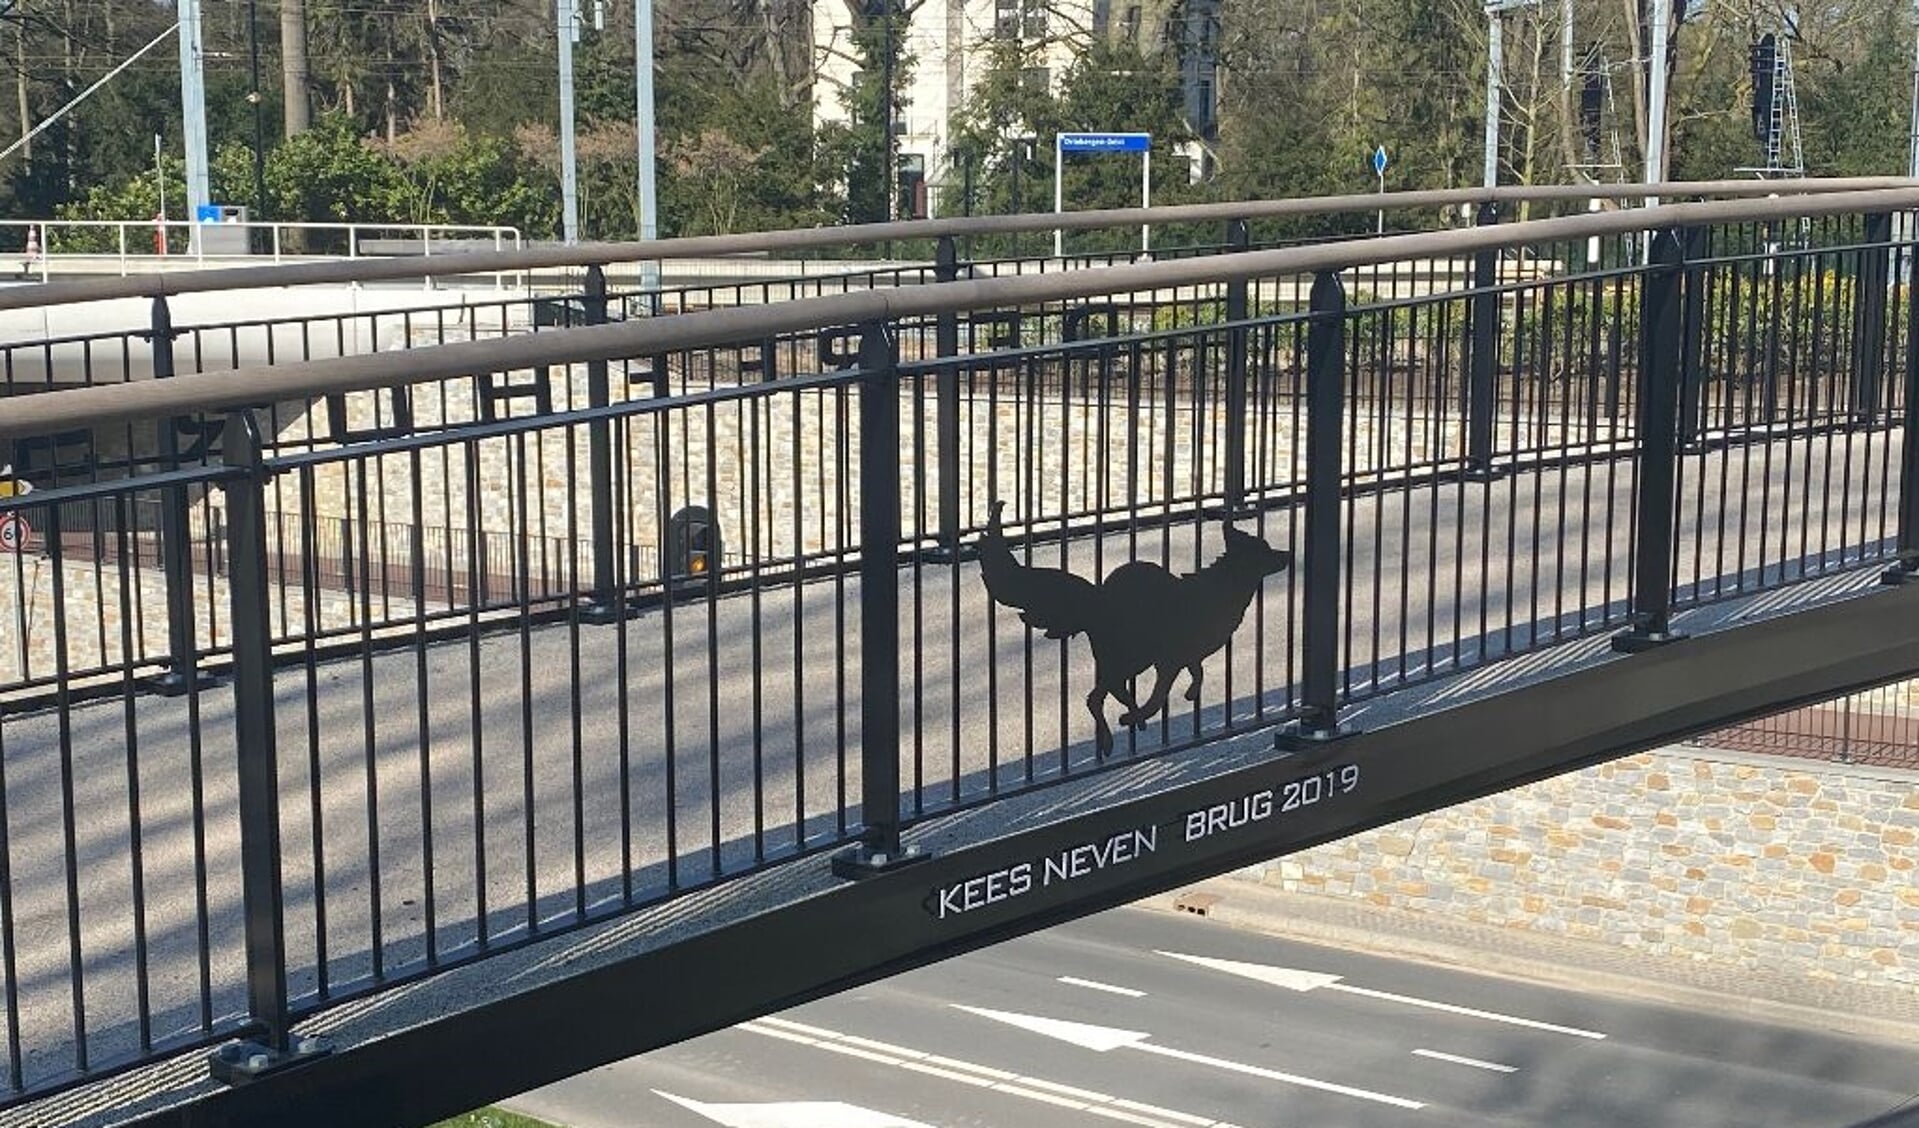 De naam van Kees Neven staat als eerbetoon op de fietsbrug.